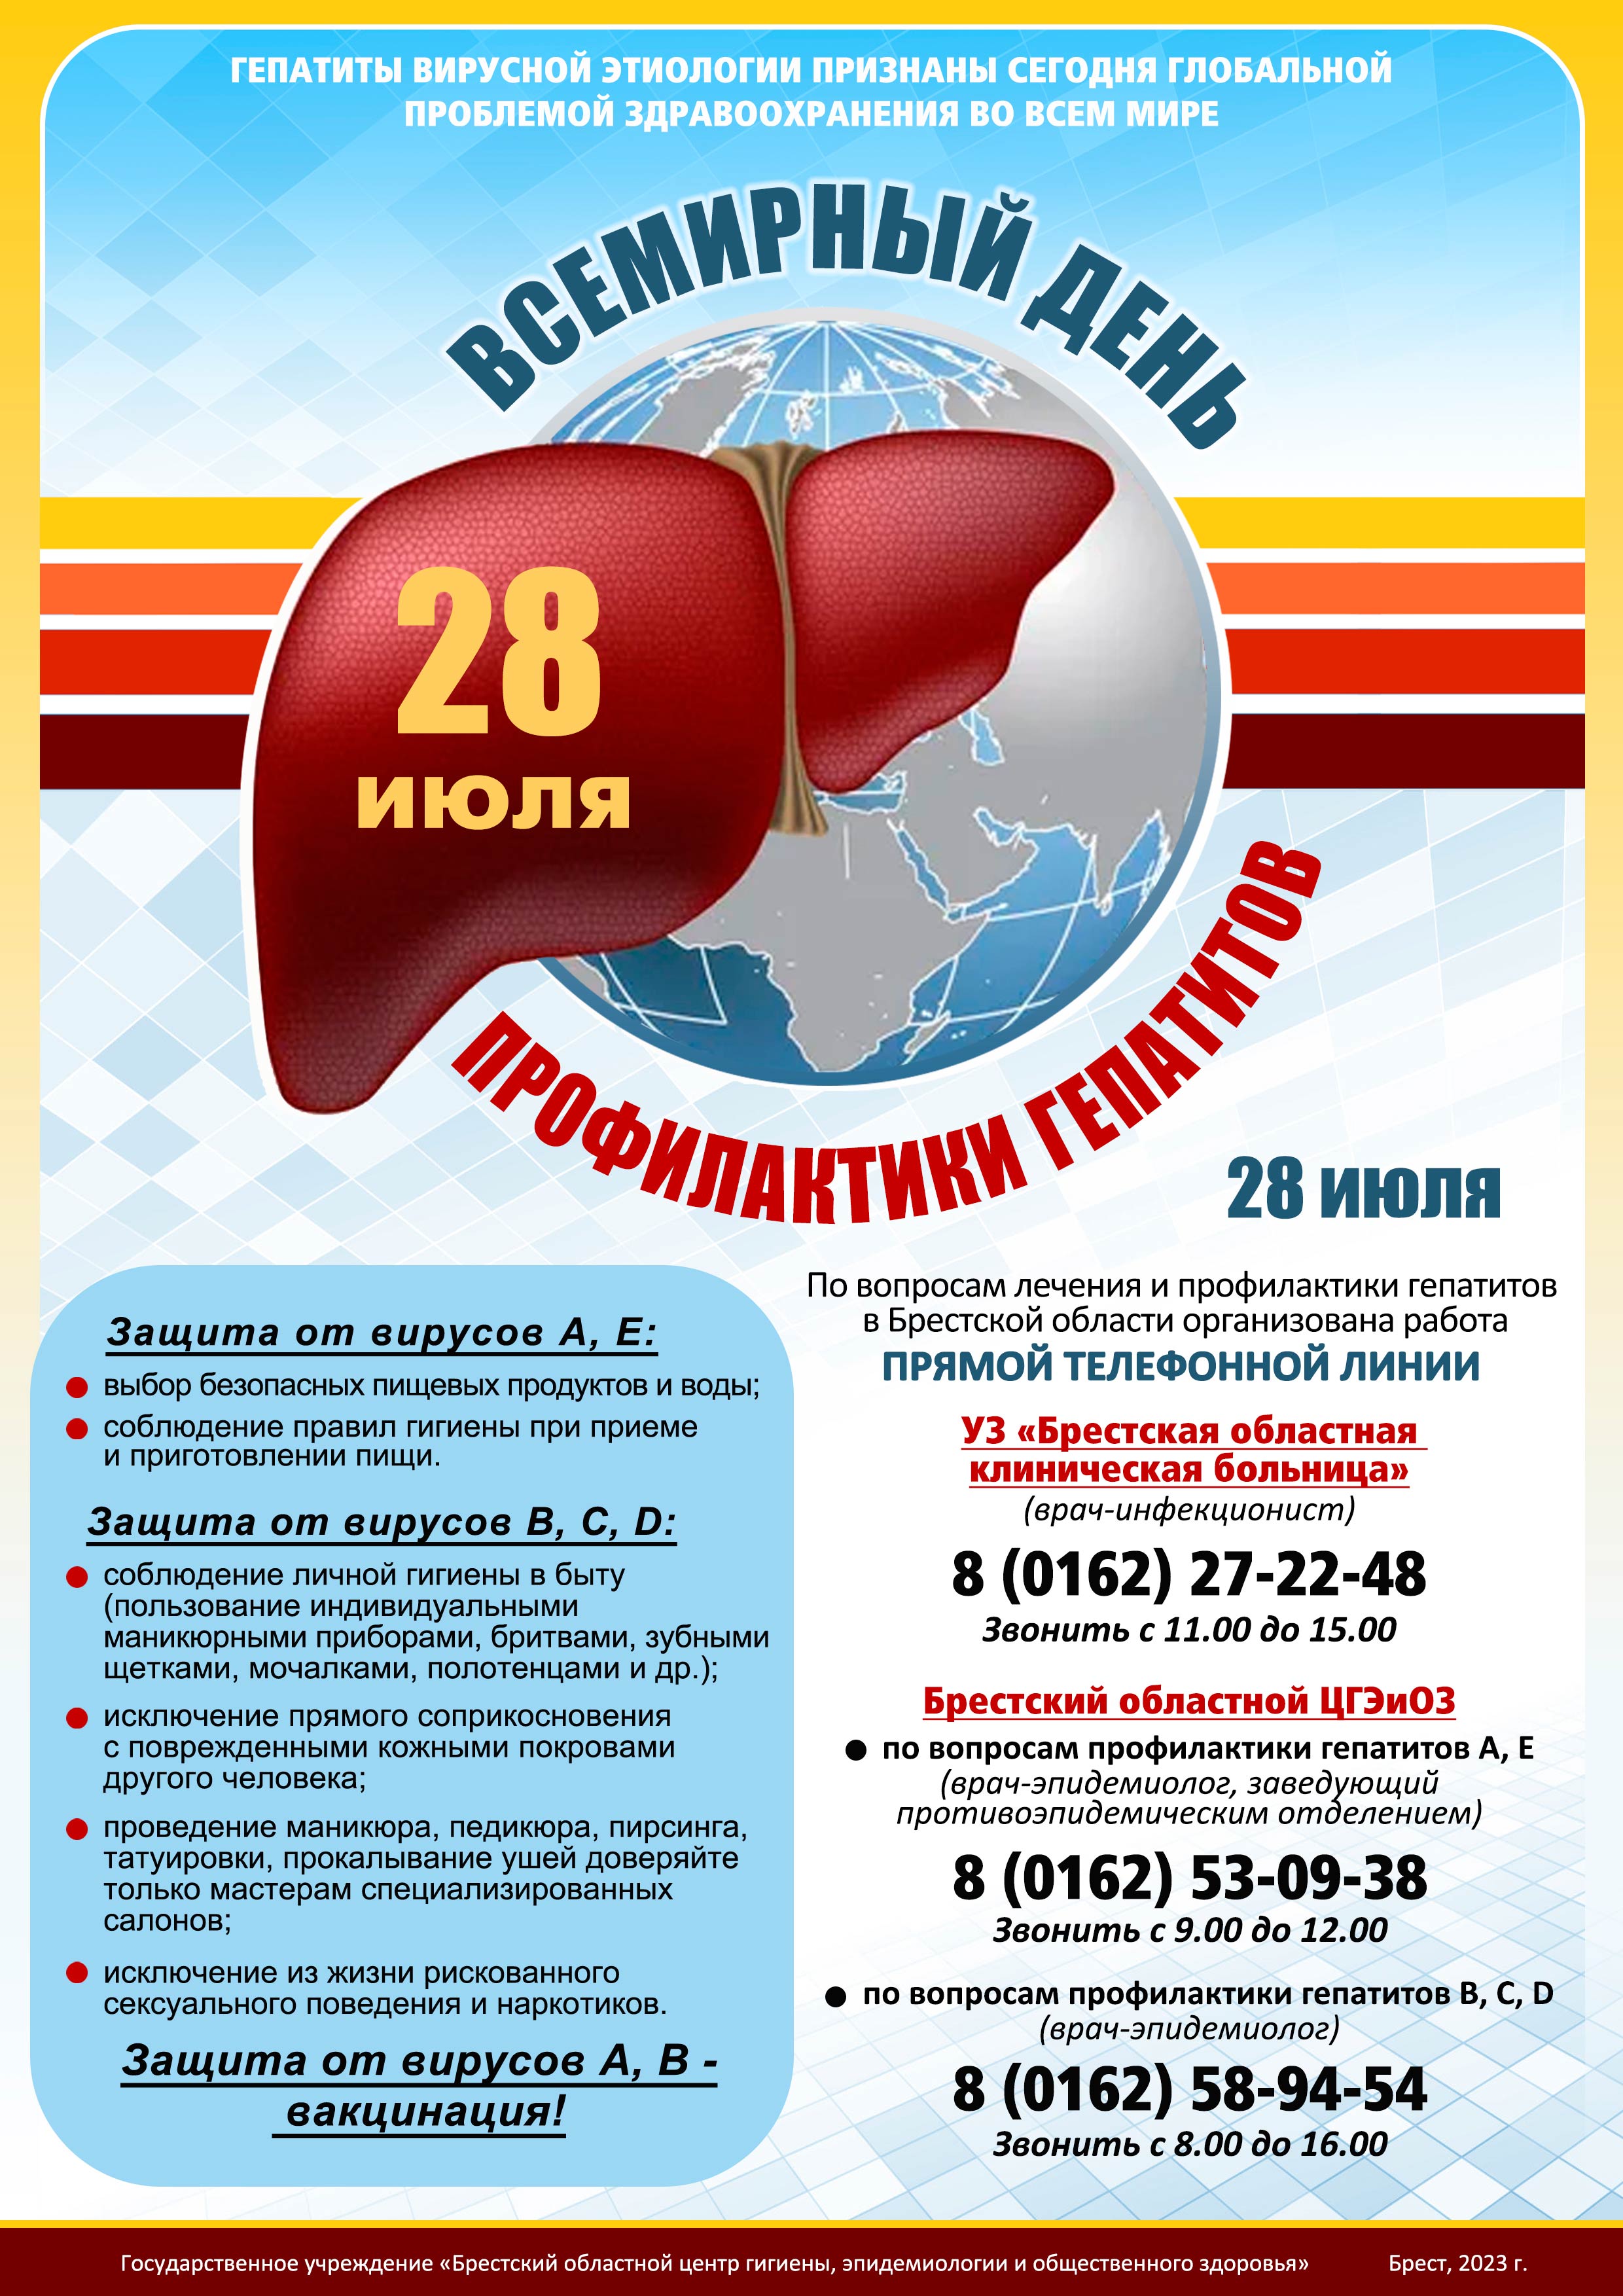 ВД профилактики гепатитов 23